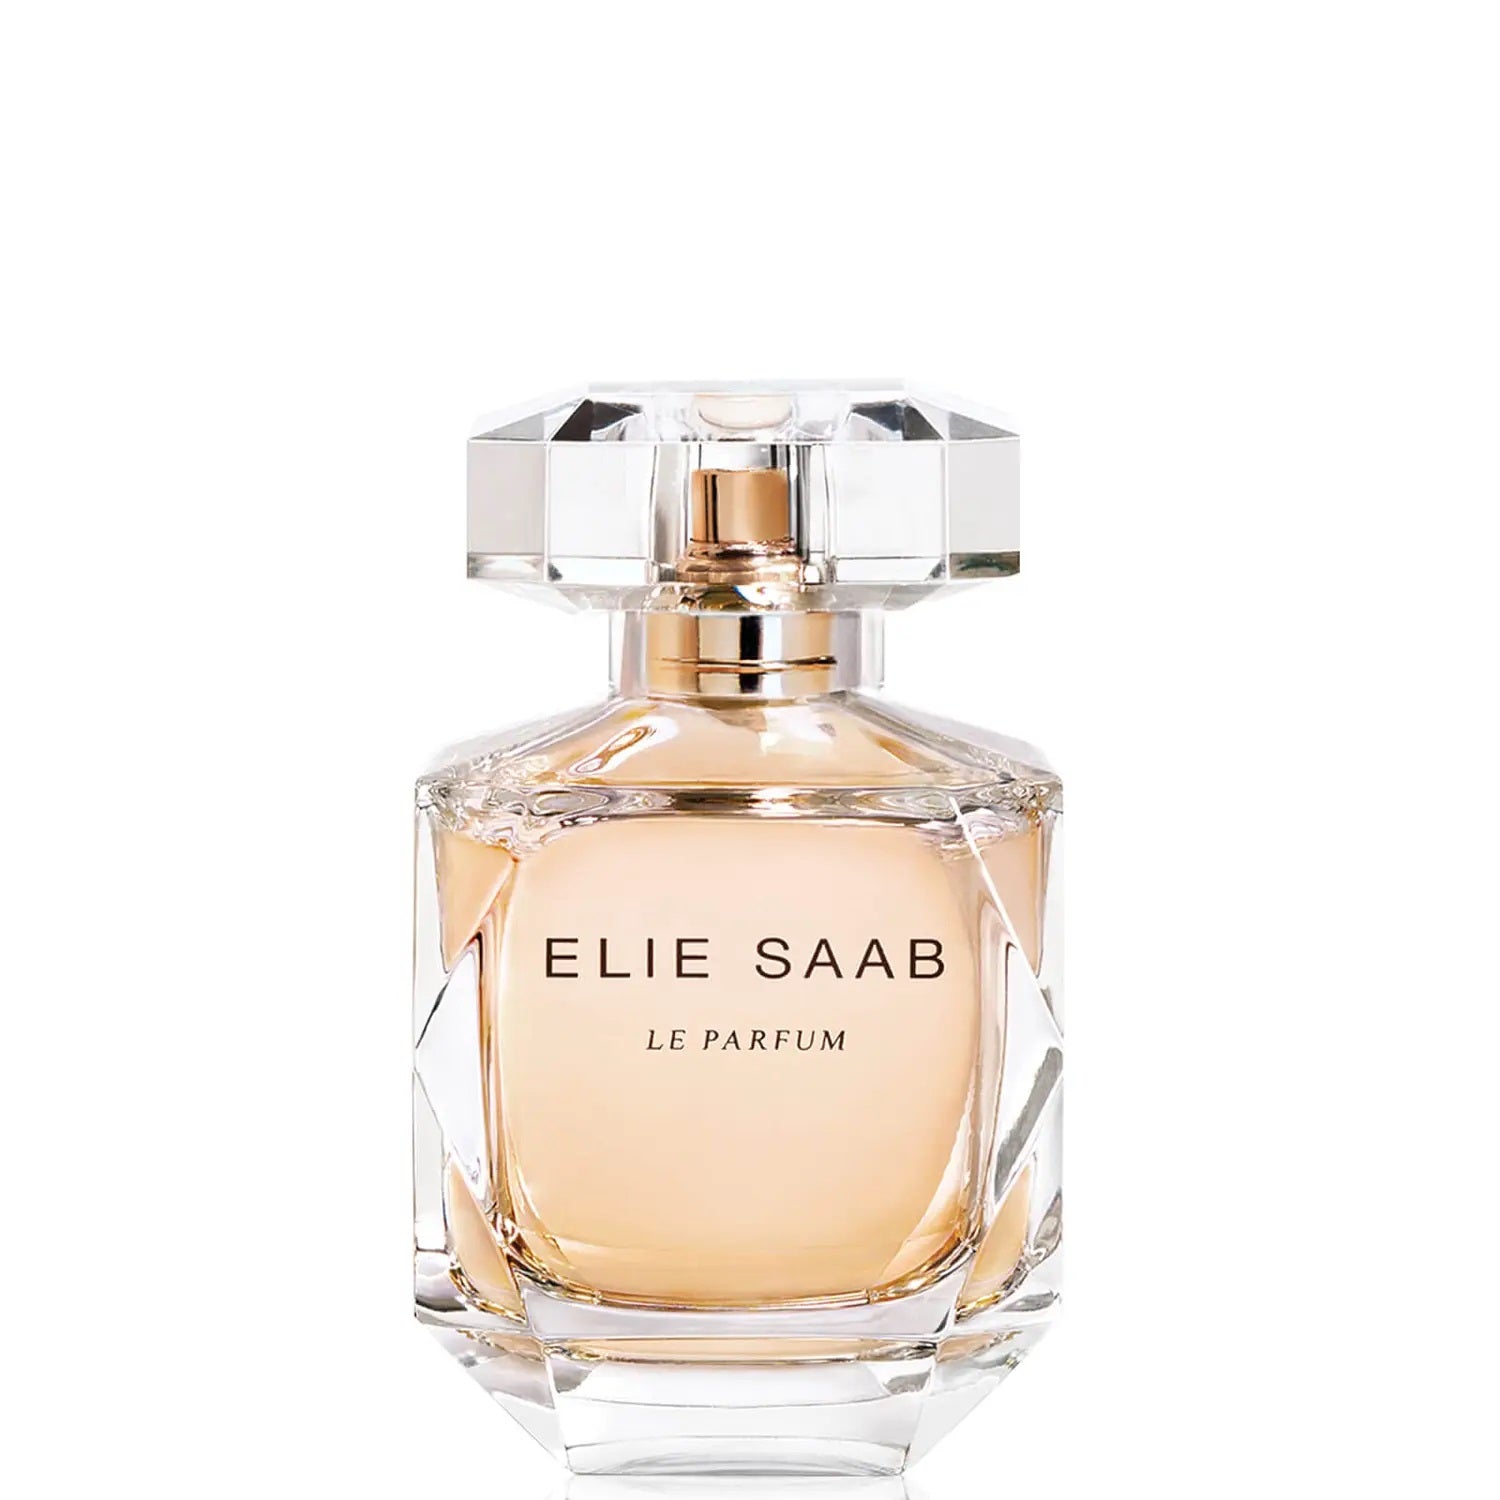 Elie Saab Le Parfum Eau de Parfum 90ml, & 30ml Spray - Peacock Bazaar